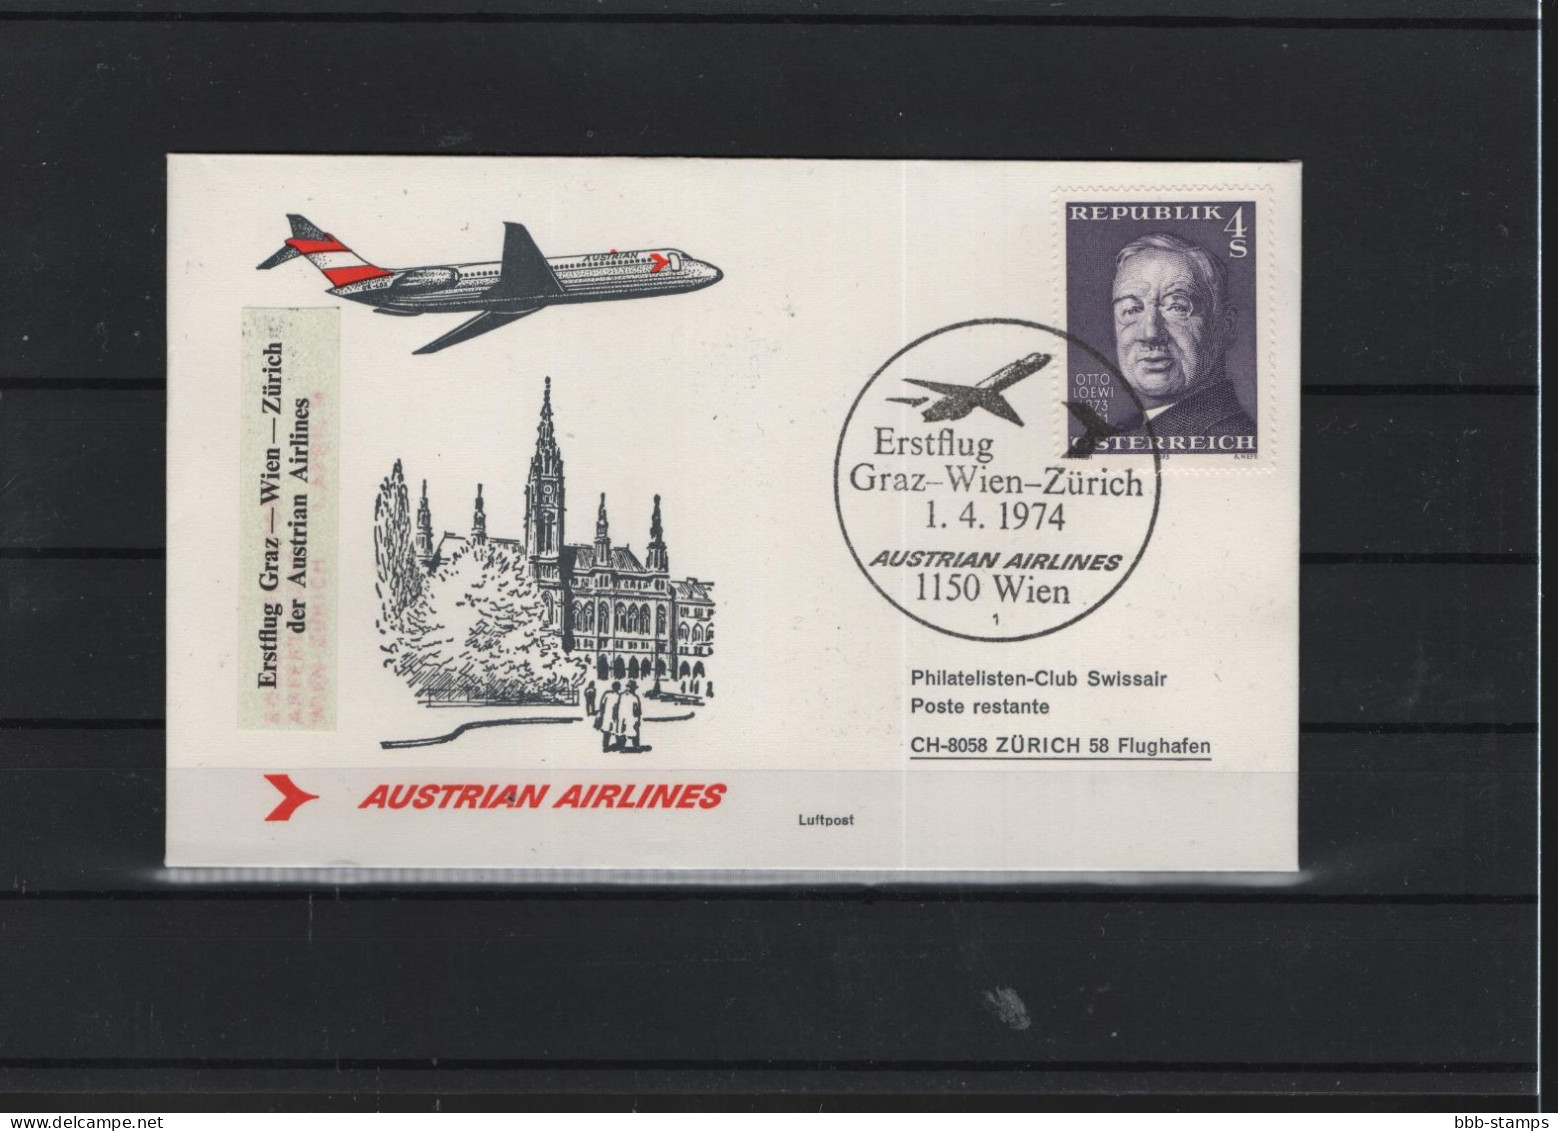 Schweiz Luftpost FFC AUA  1.4.1974 Graz - Wien - Zürich - Primi Voli